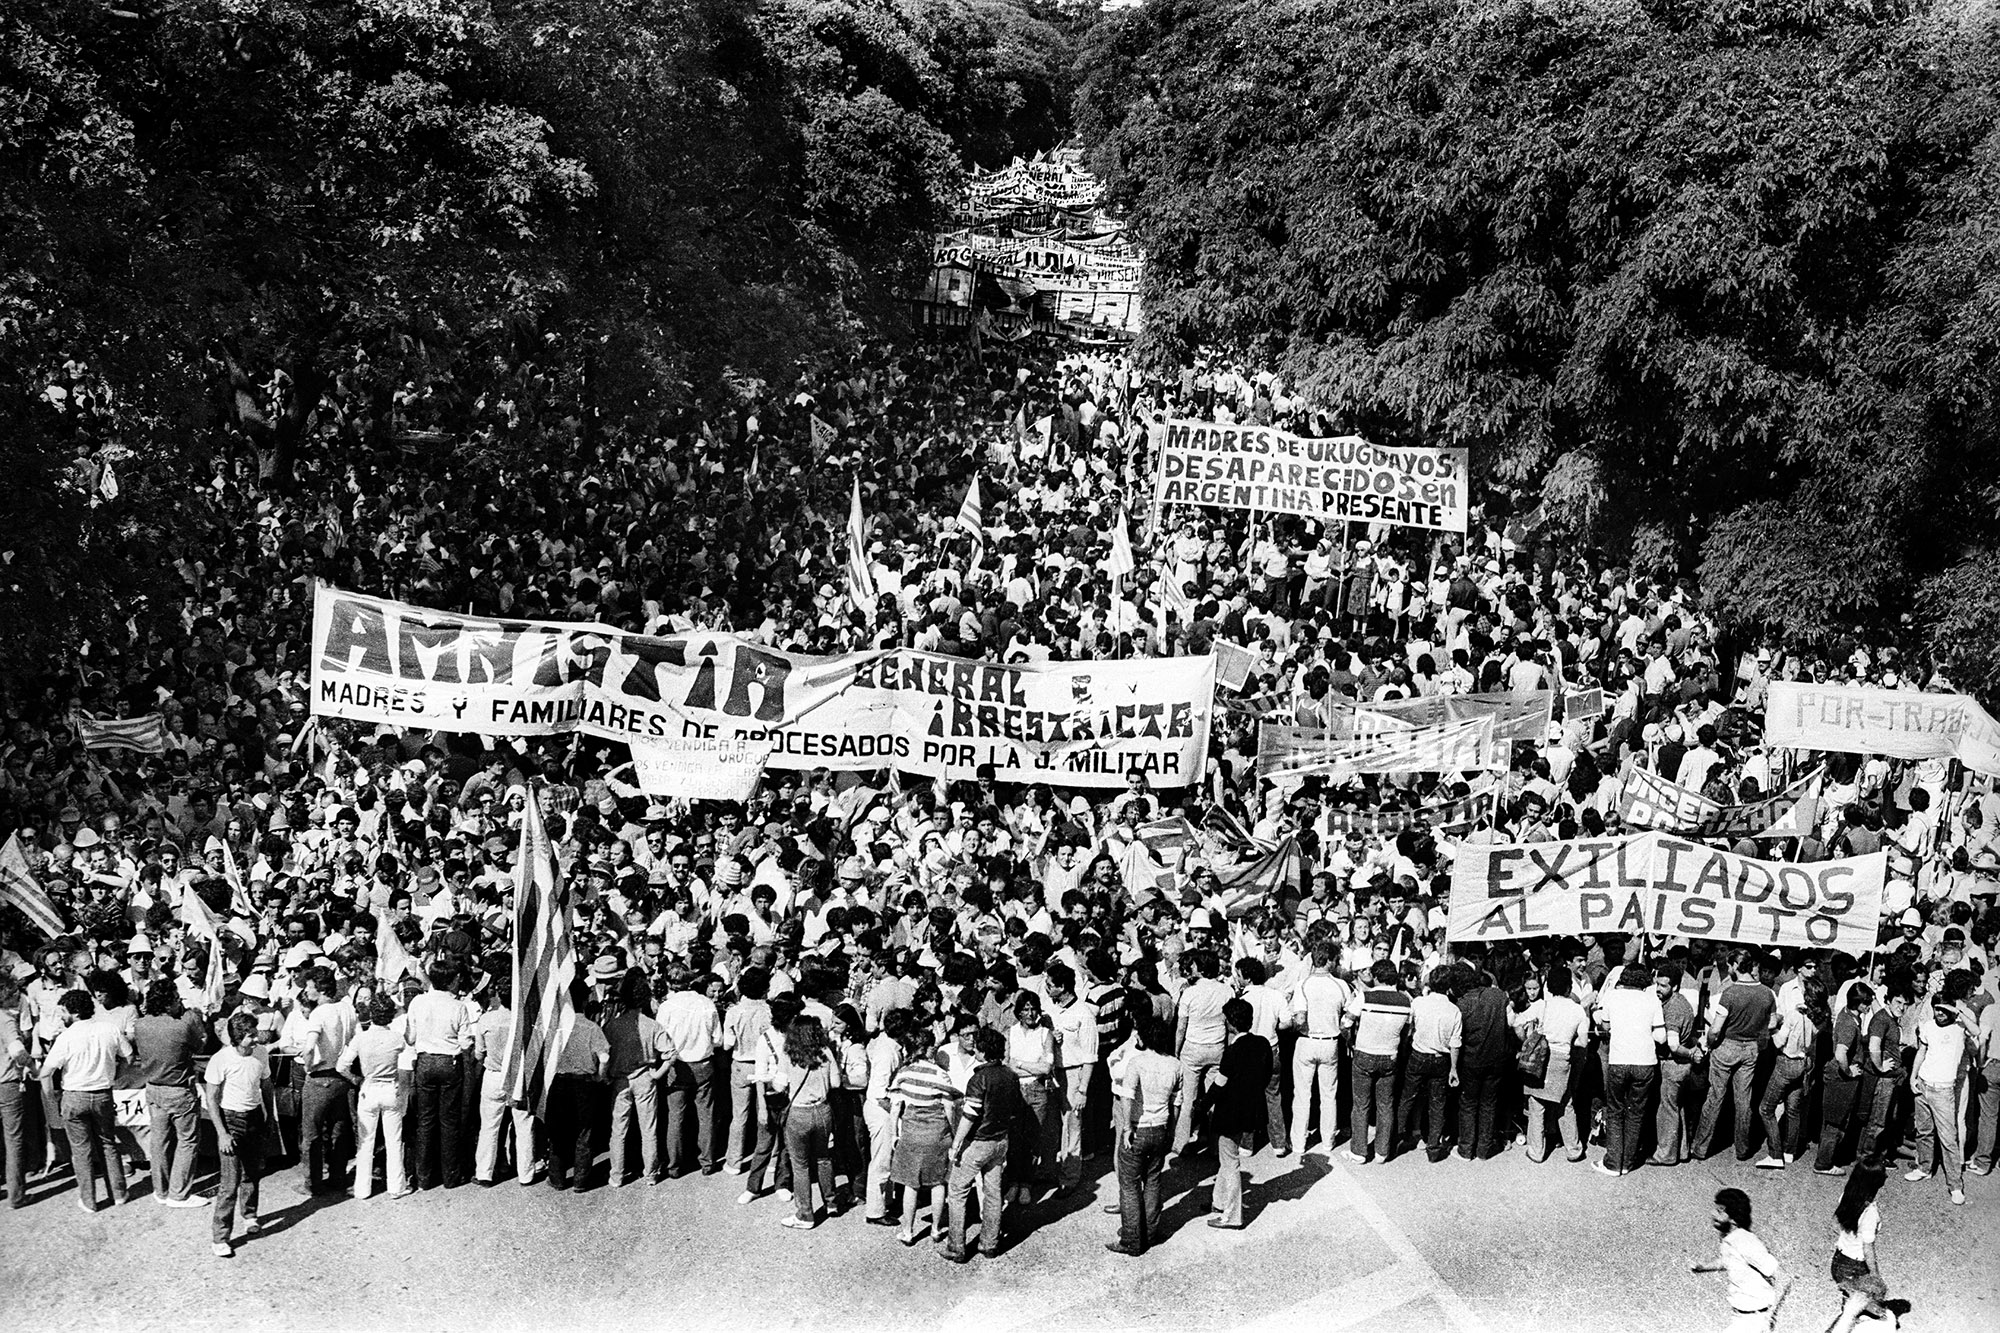 Fotografía de un acto multitudinario en Uruguay reclamando democracia. (27/11/1983, Montevideo)